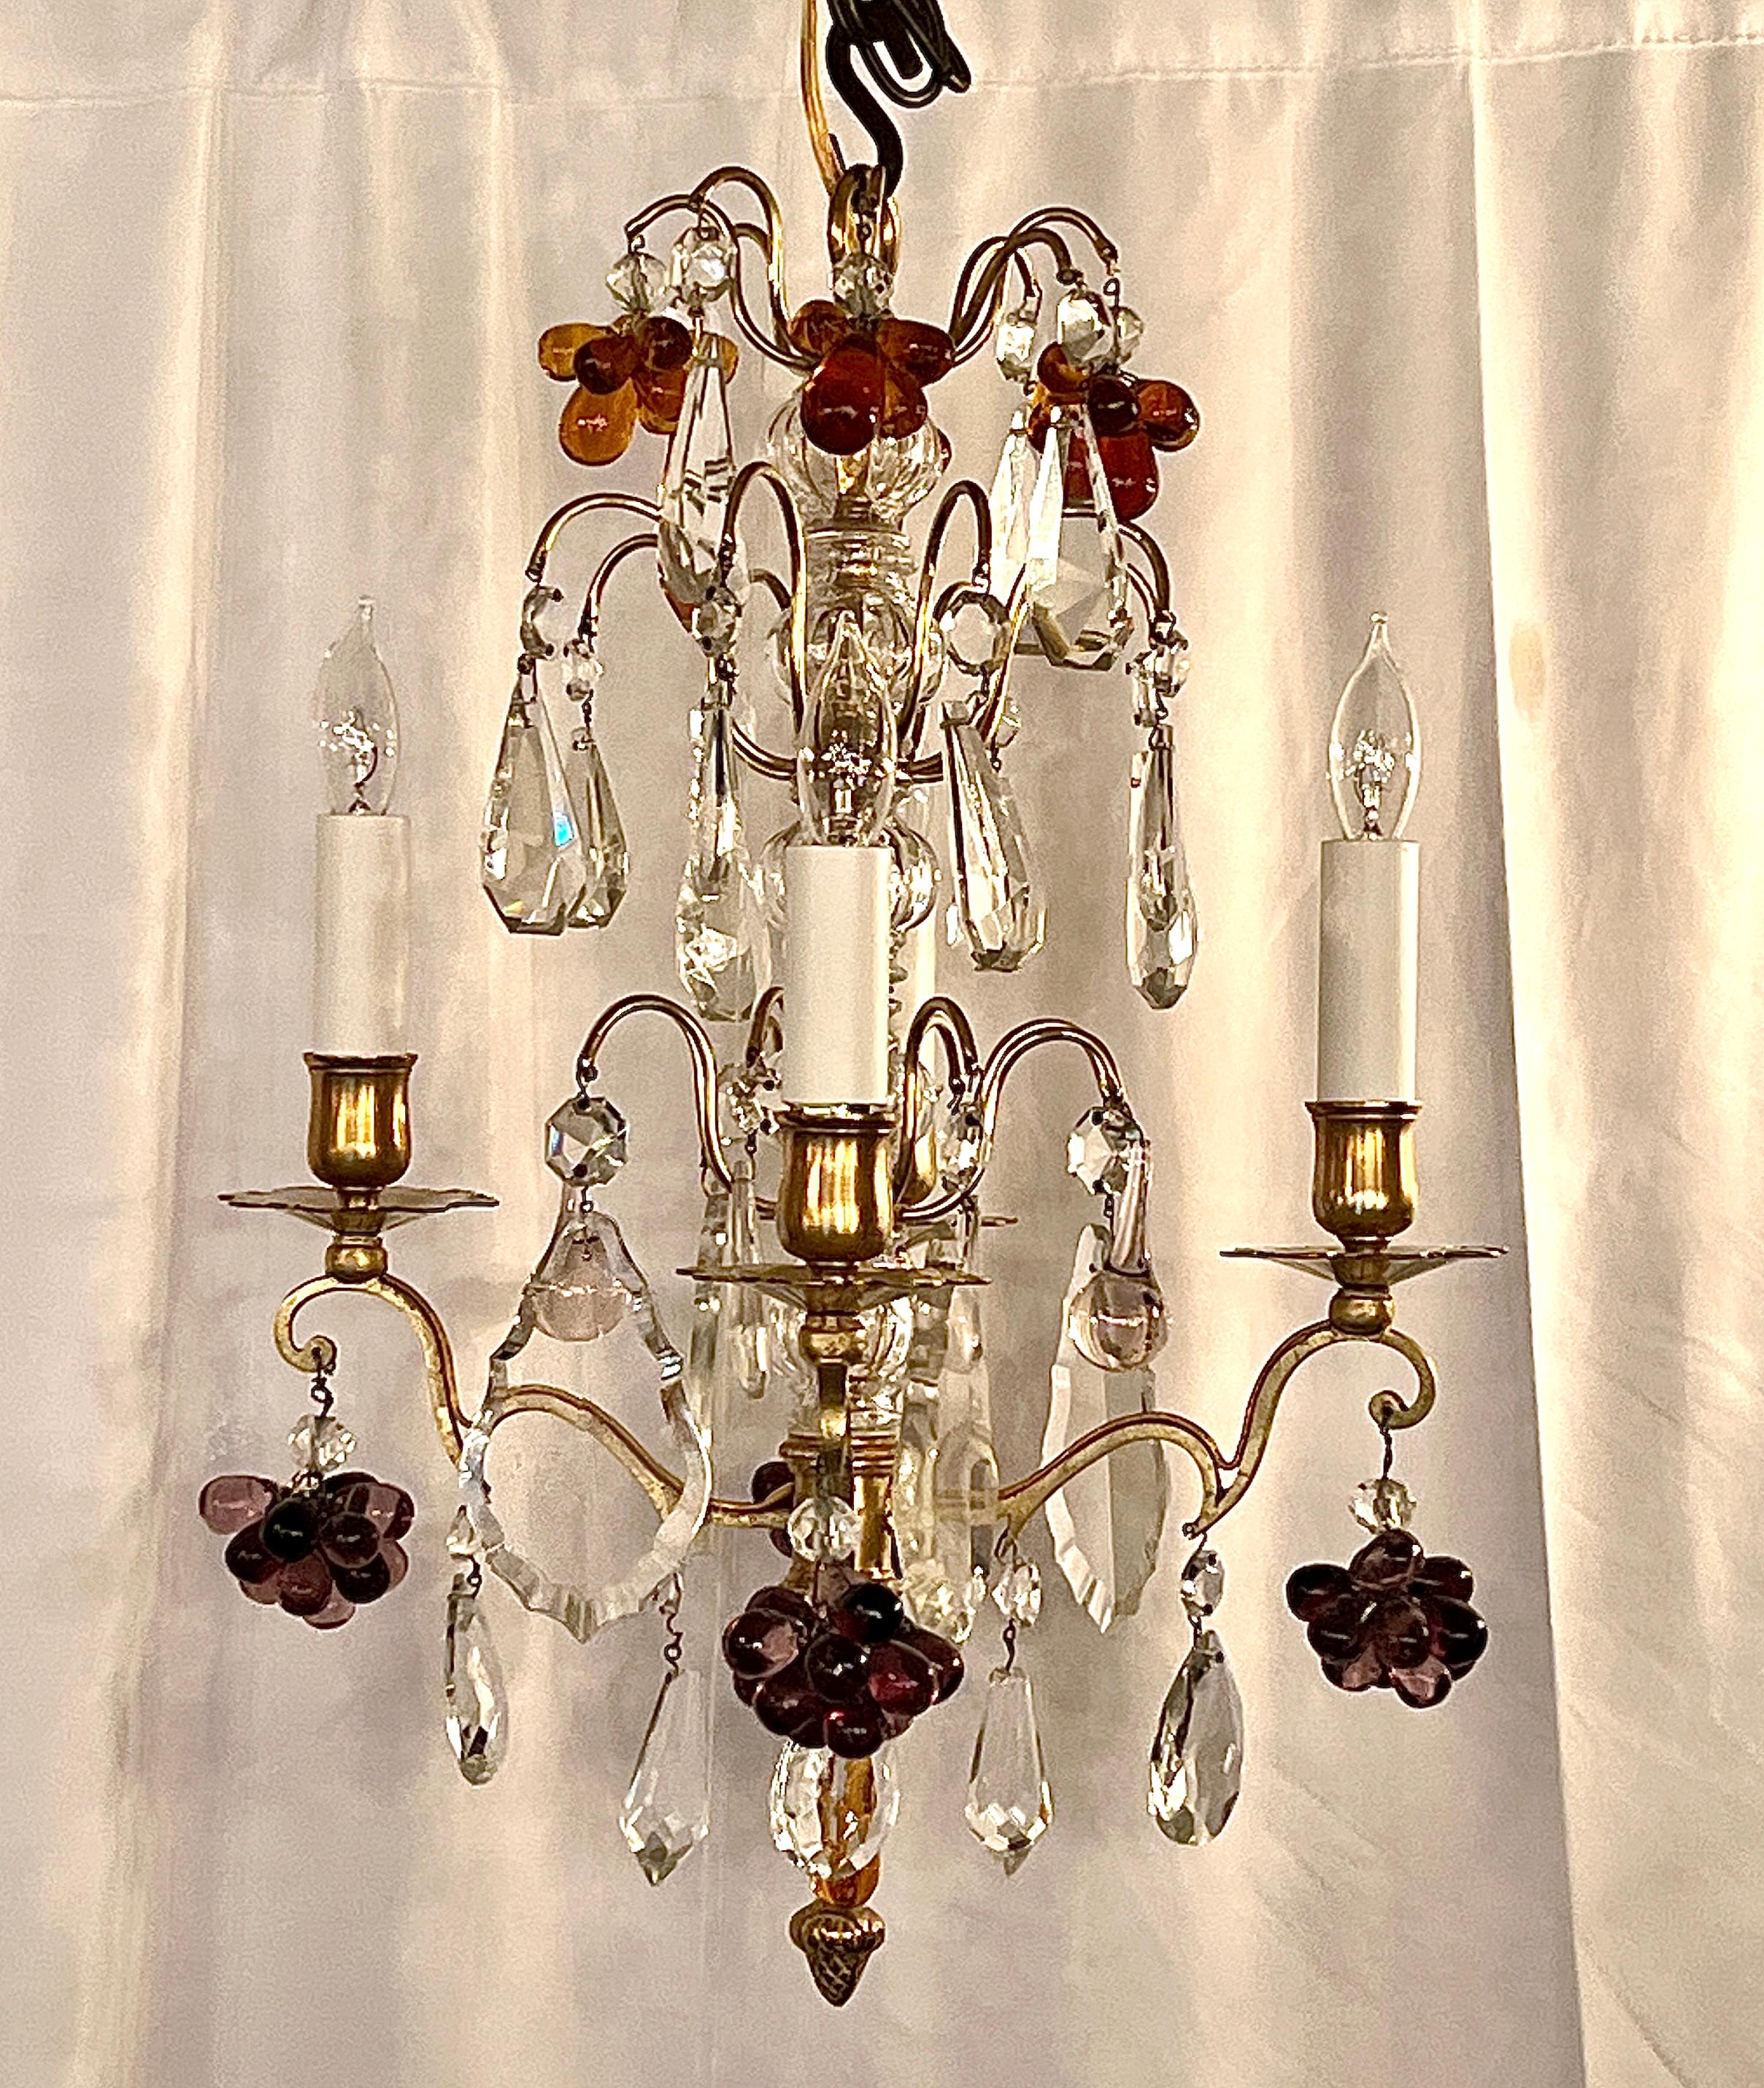 Paar antike französische Baccarat Kristall & Bronze D'ore Kronleuchter, CIRCA 1890's
Sweet und Petite Kronleuchter mit farbigen Kristallen, klaren Kristallen und einem Stiel in geschliffenem Kristall auf einem Rahmen aus Goldbronze.
